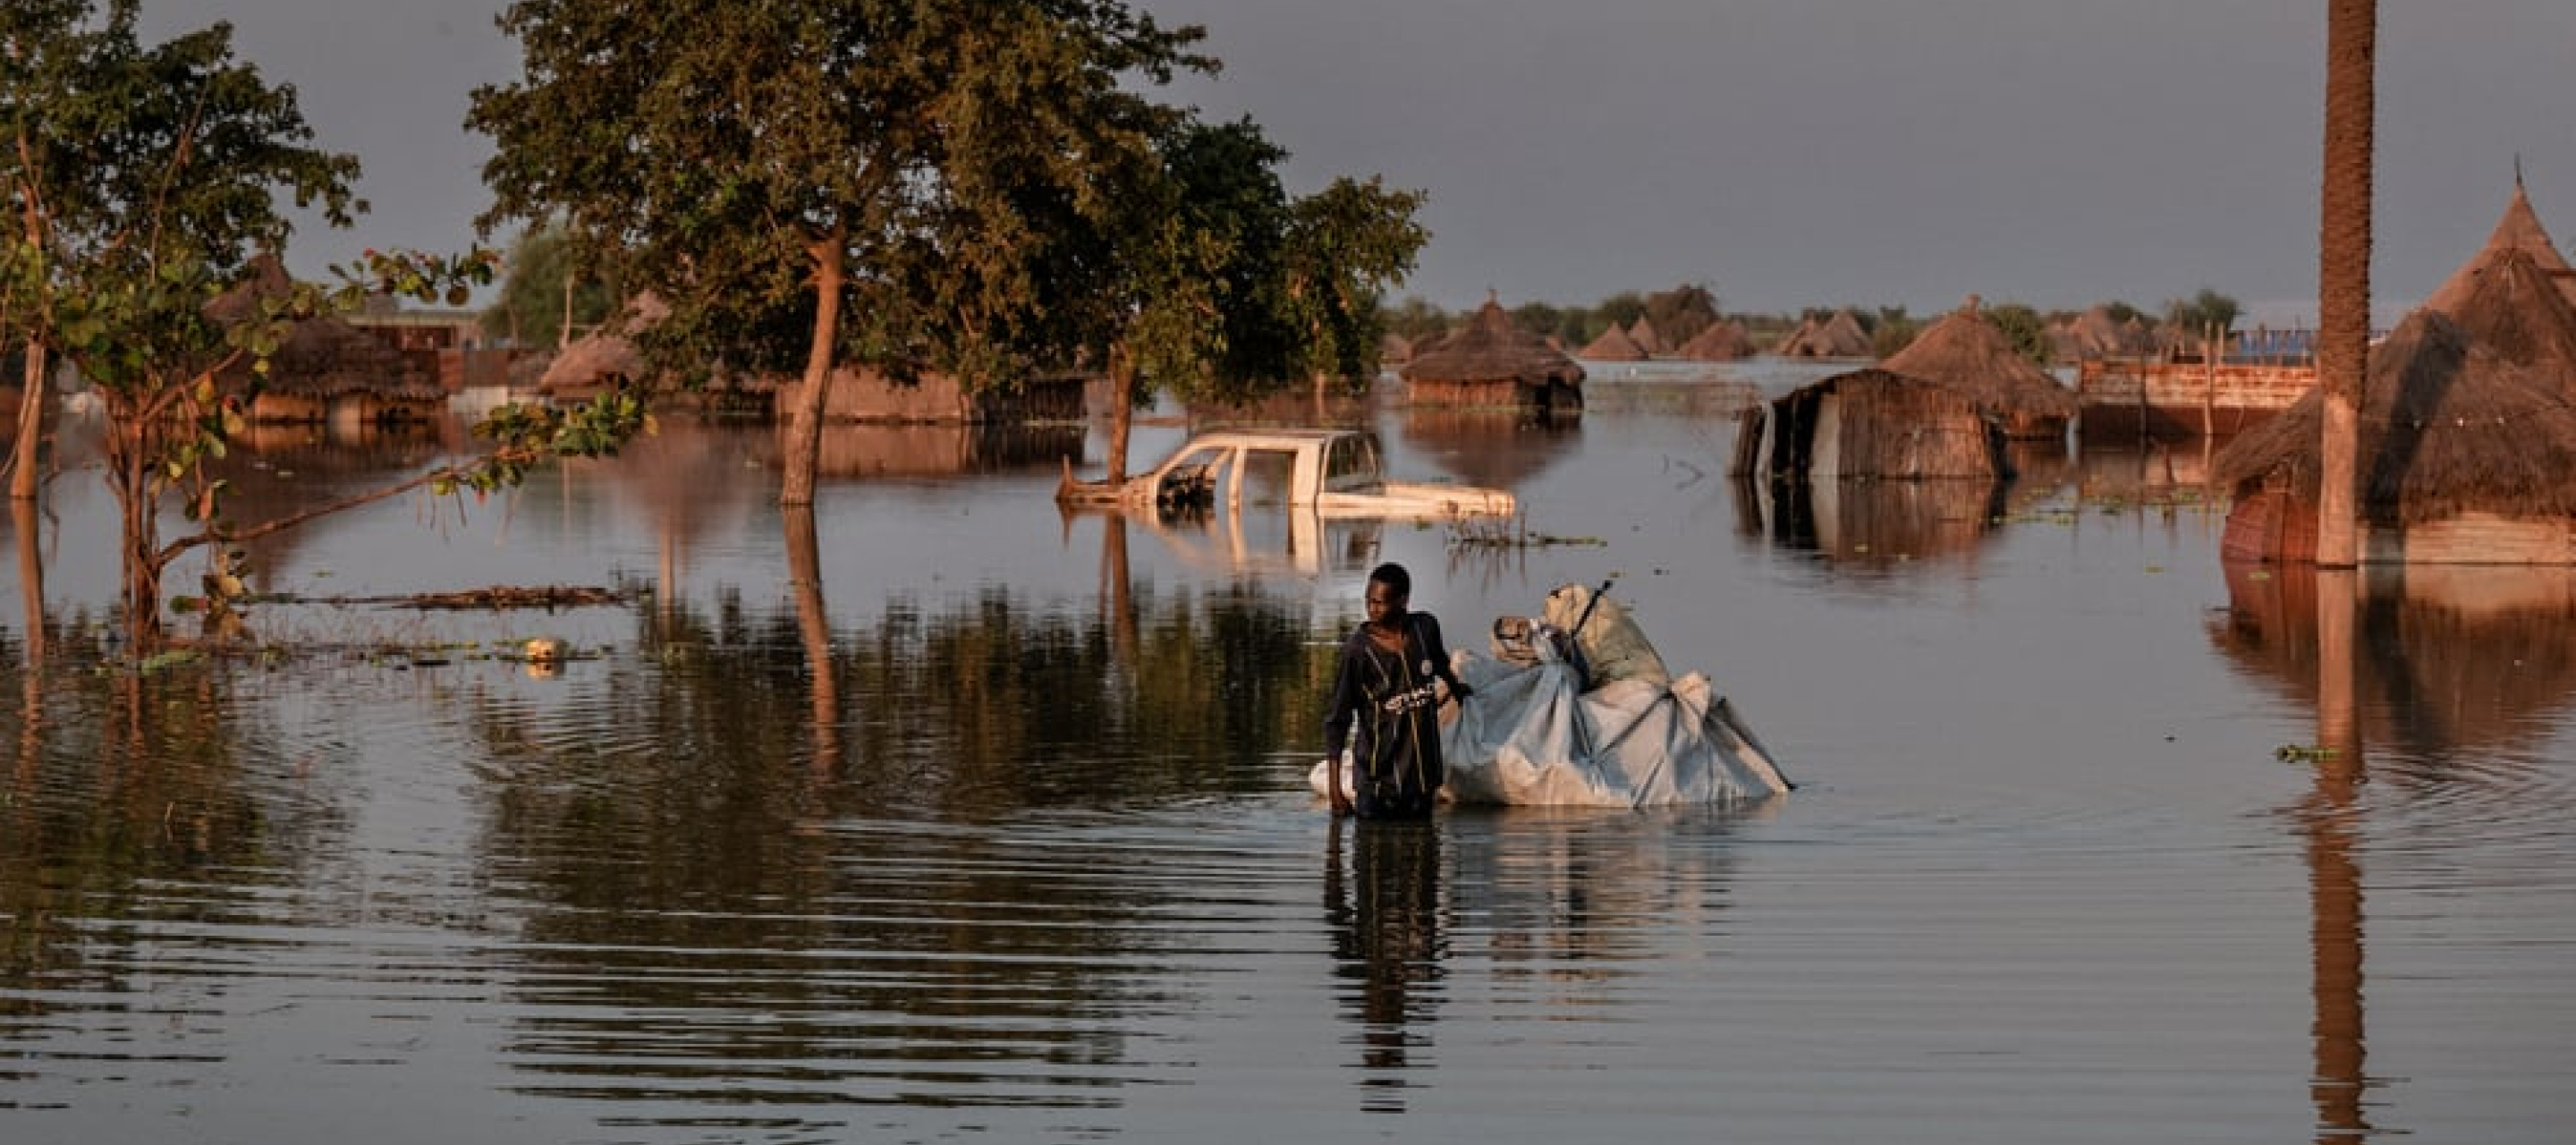 Schwere Überschwemmungen im Südsudan zerstörten Lebensgrundlagen